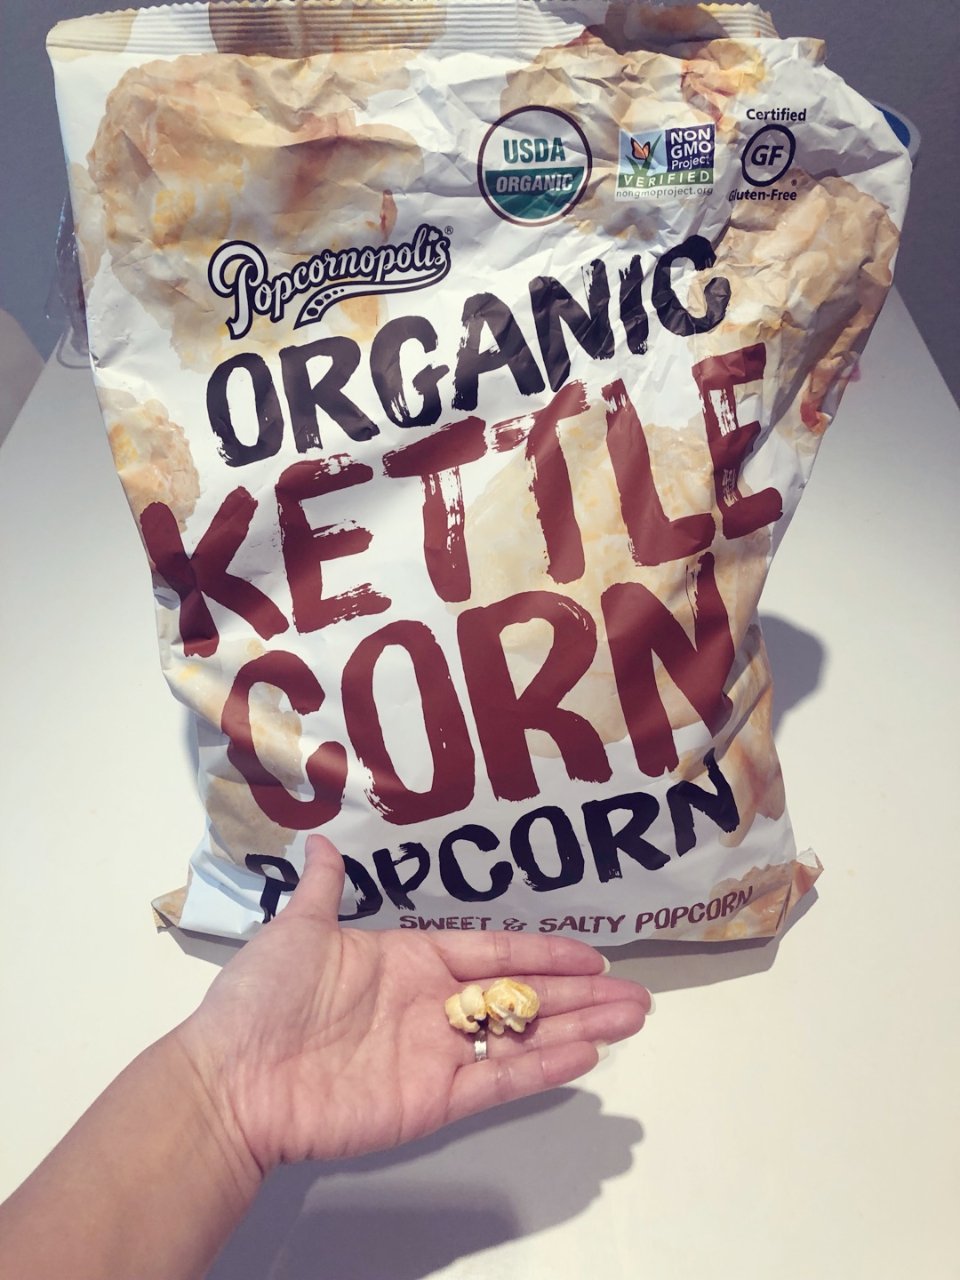 kettle corn,有机食品,non gmo,Costco,4.79美元